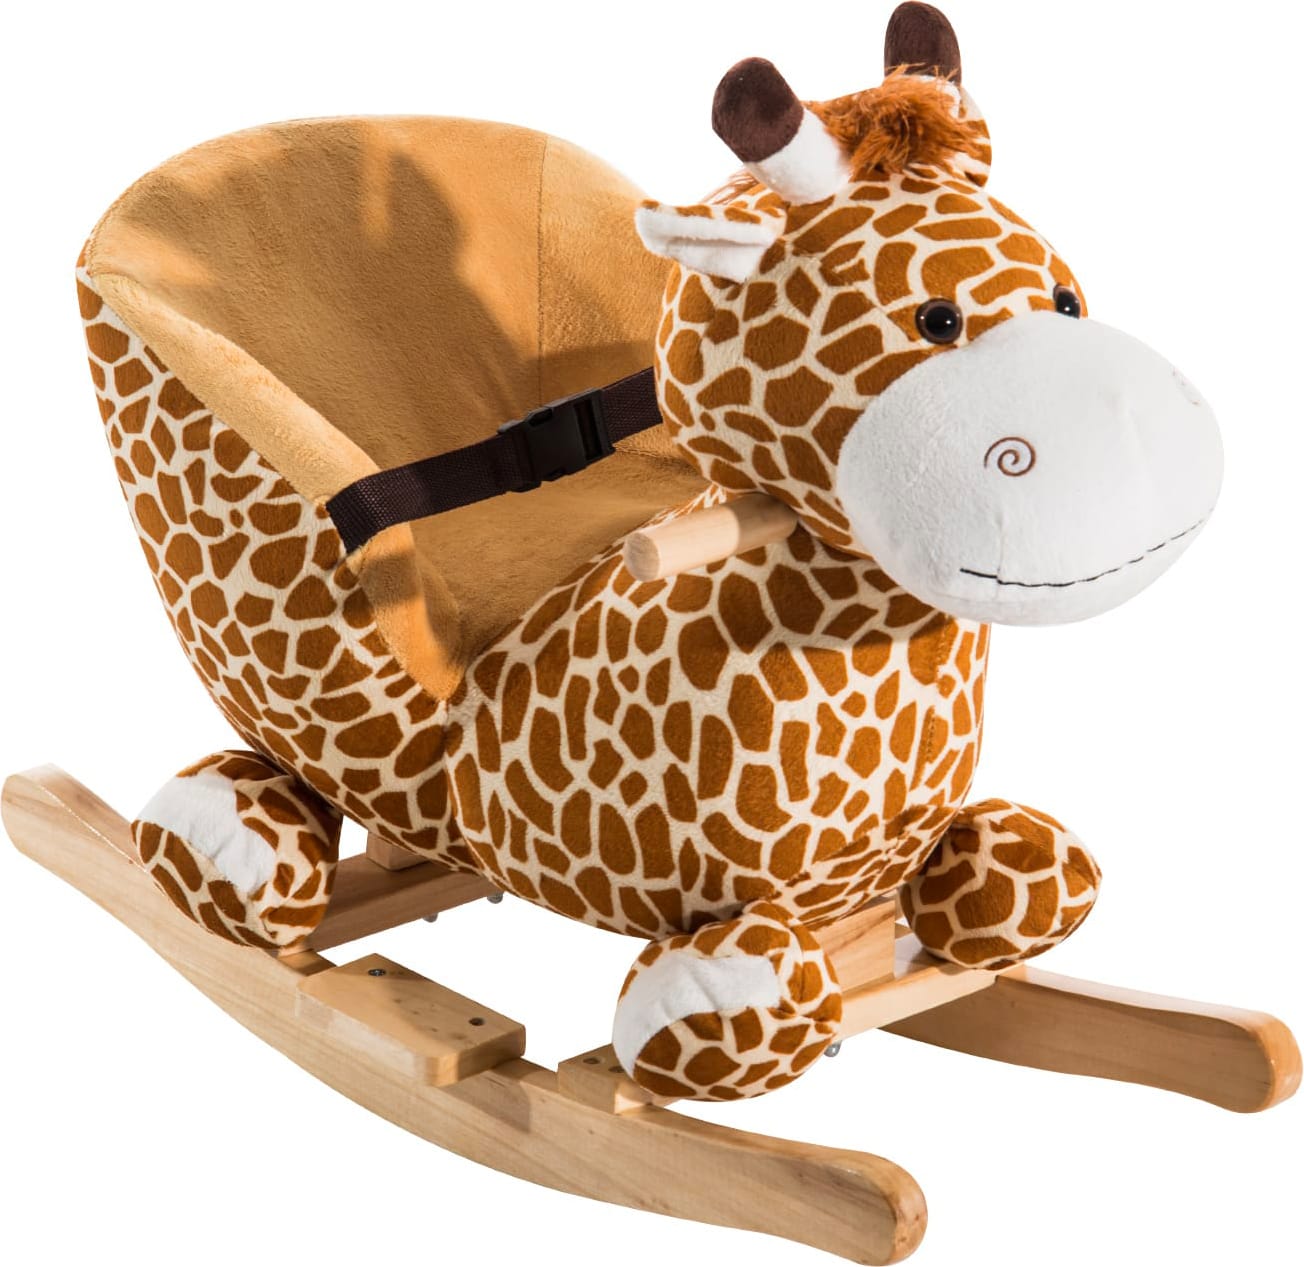 dechome 330006 dondolo giraffa peluche in legno con suoni cavalcabile per bambini da 18+ mesi colore marrone - 330006